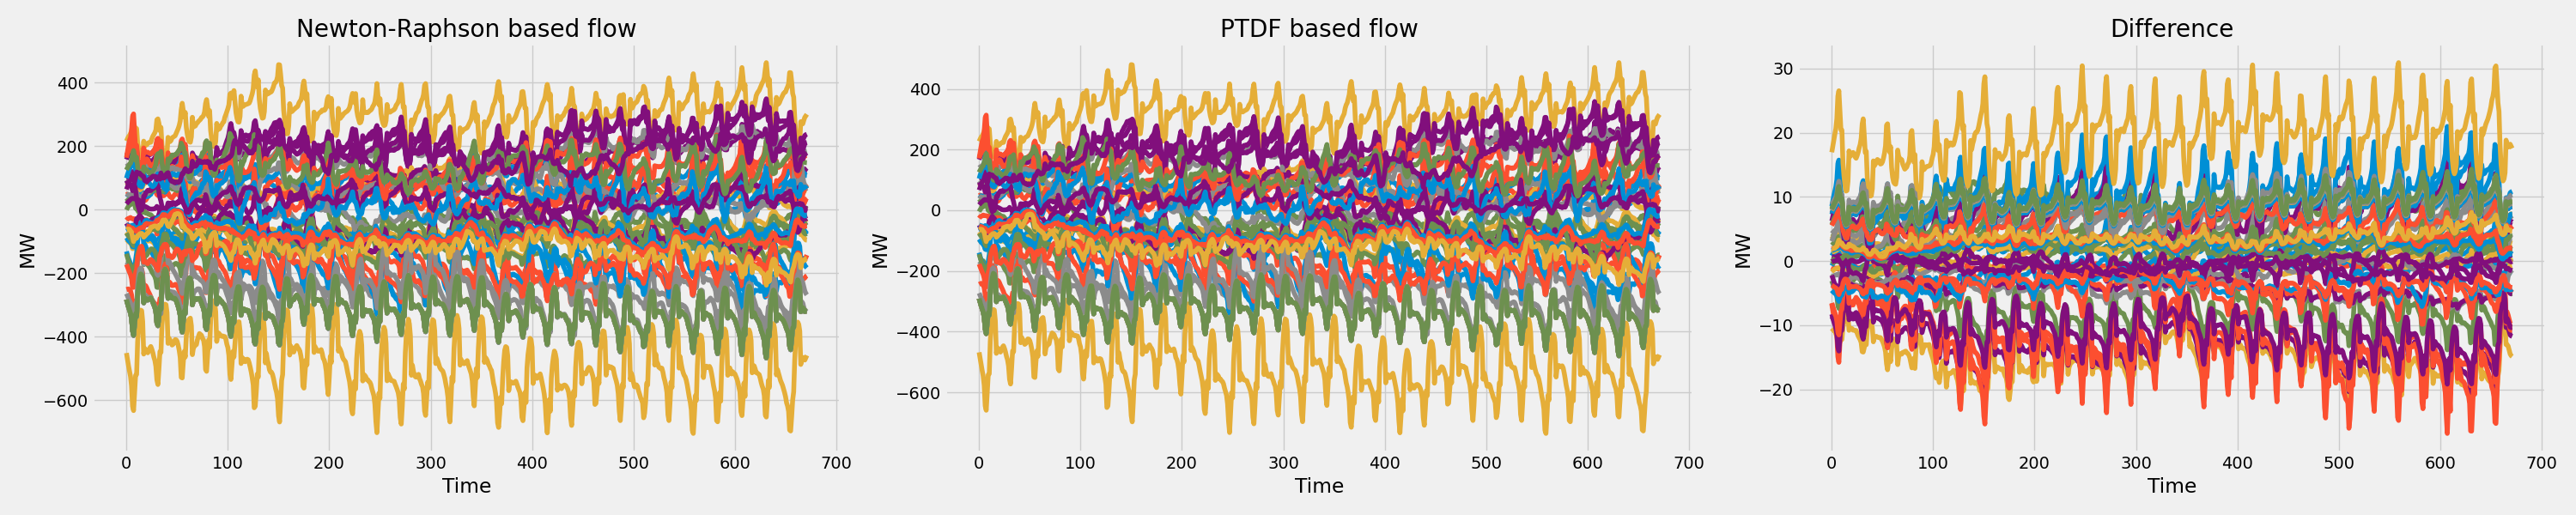 PTDF flows comparison.png